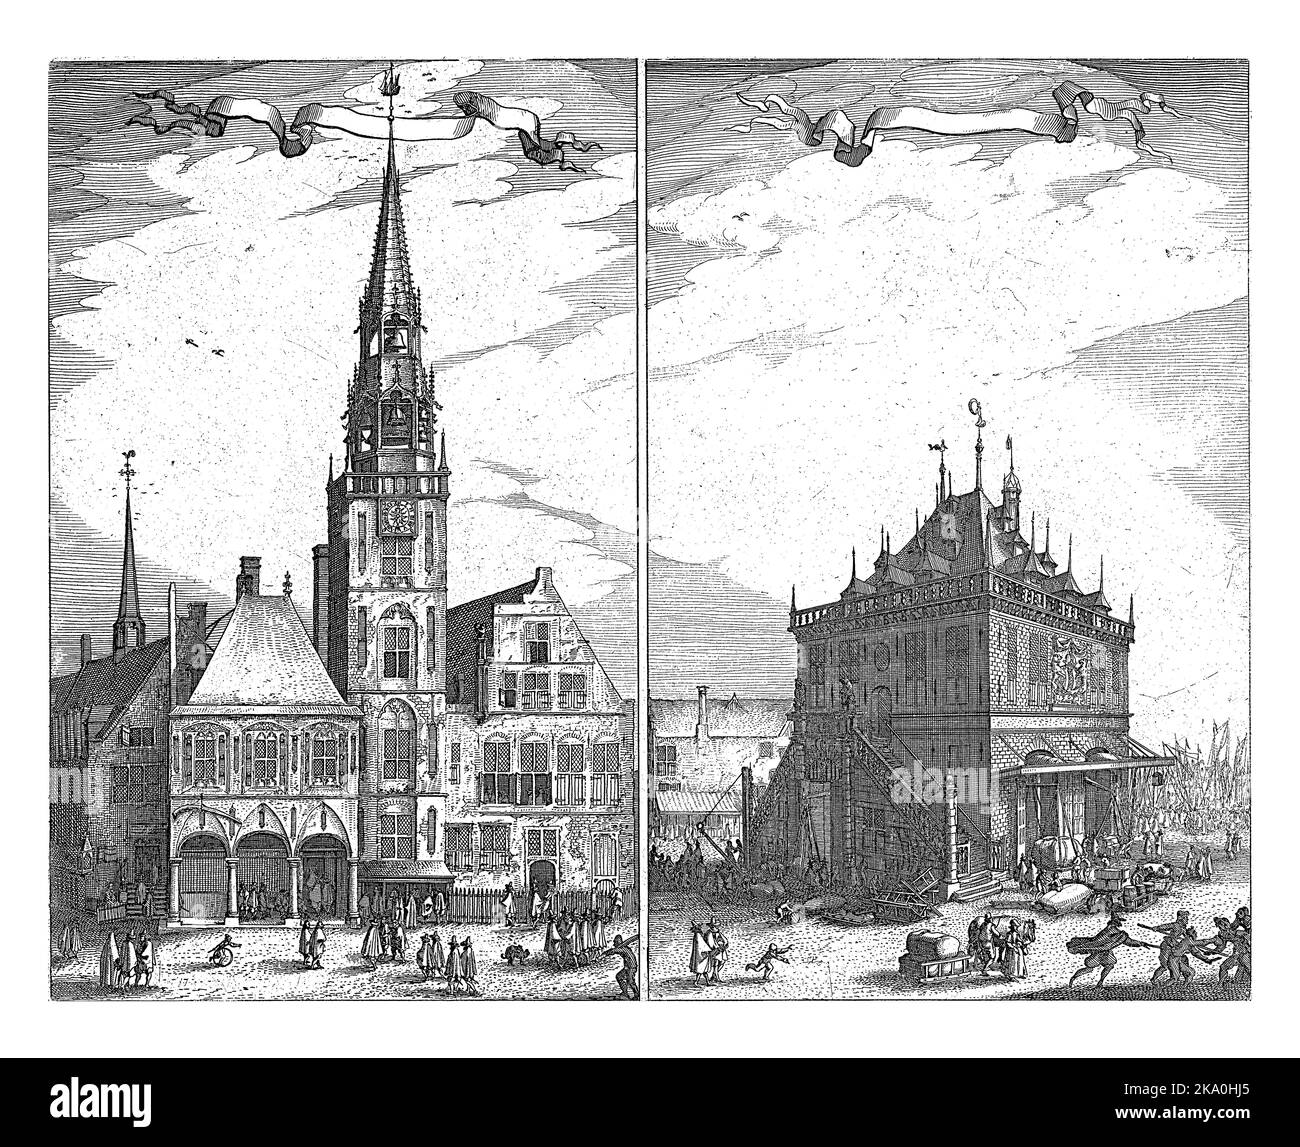 Blick auf das Alte Rathaus und den Waag am Dam-Platz in Amsterdam. Zwei Aufführungen auf einer Platte. Stockfoto